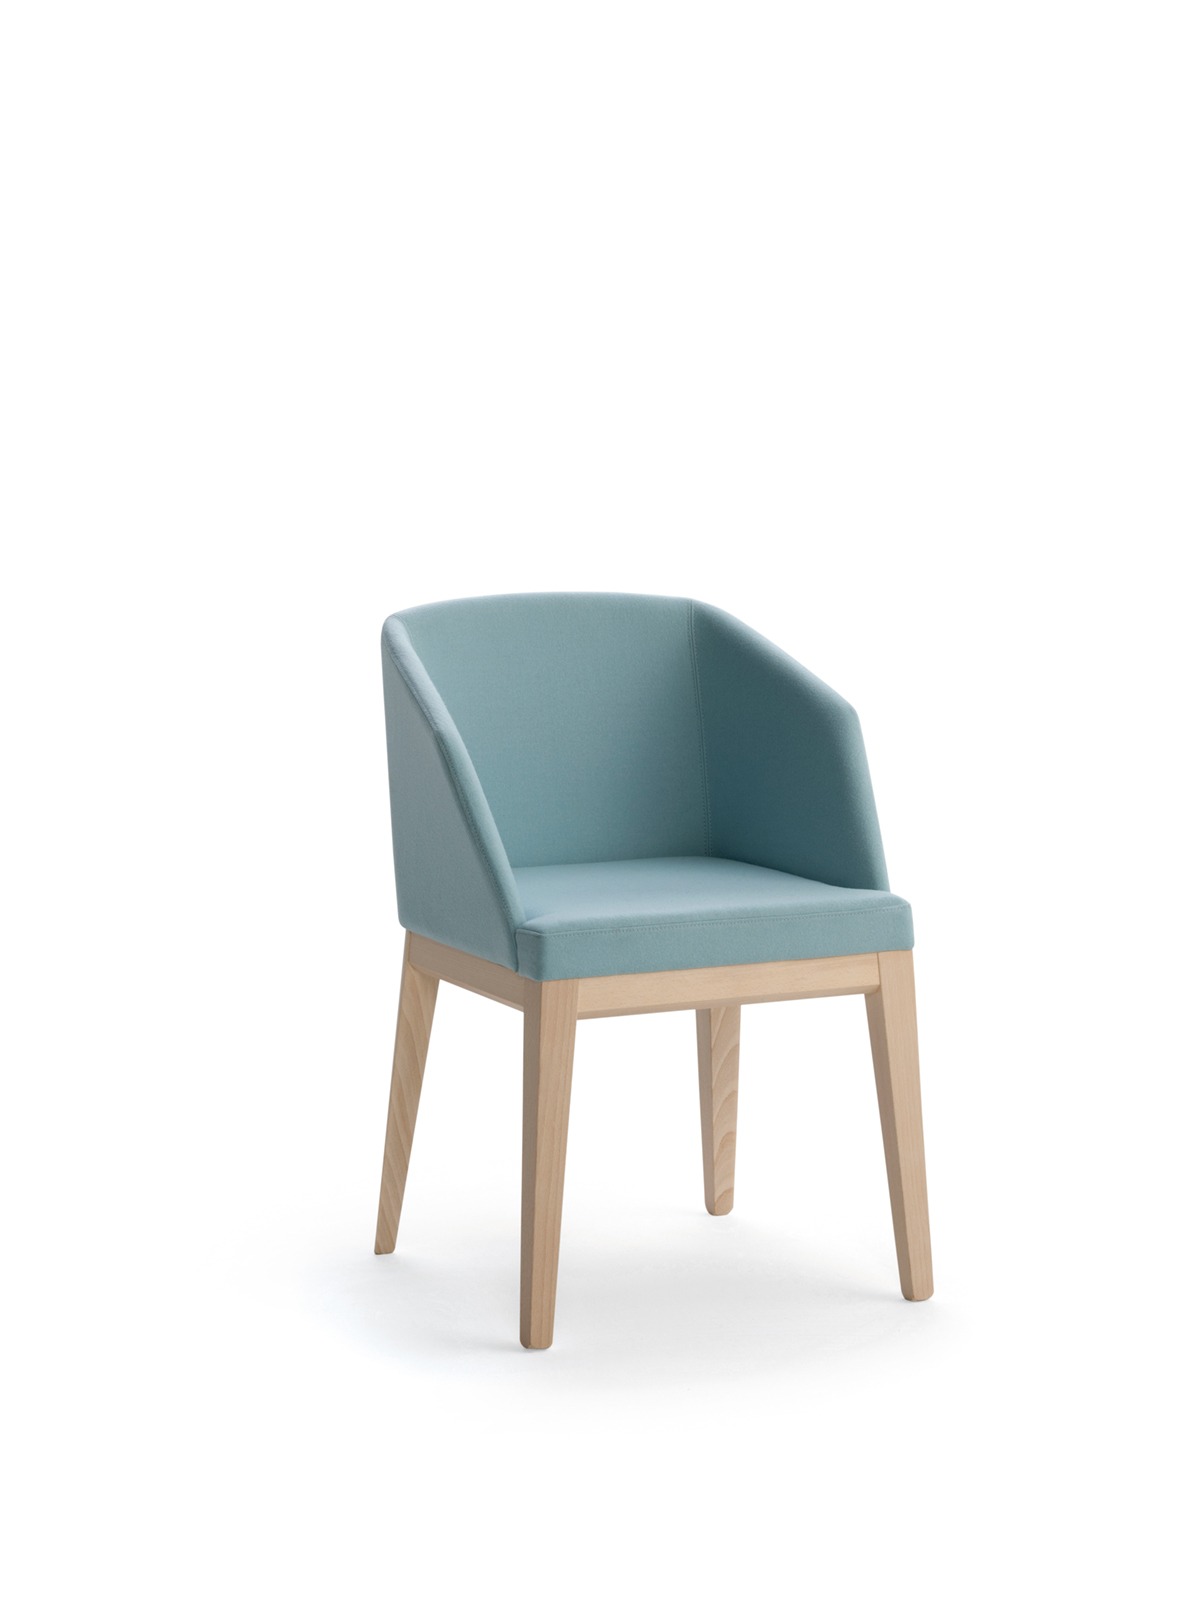 Eleanor Arm Chair